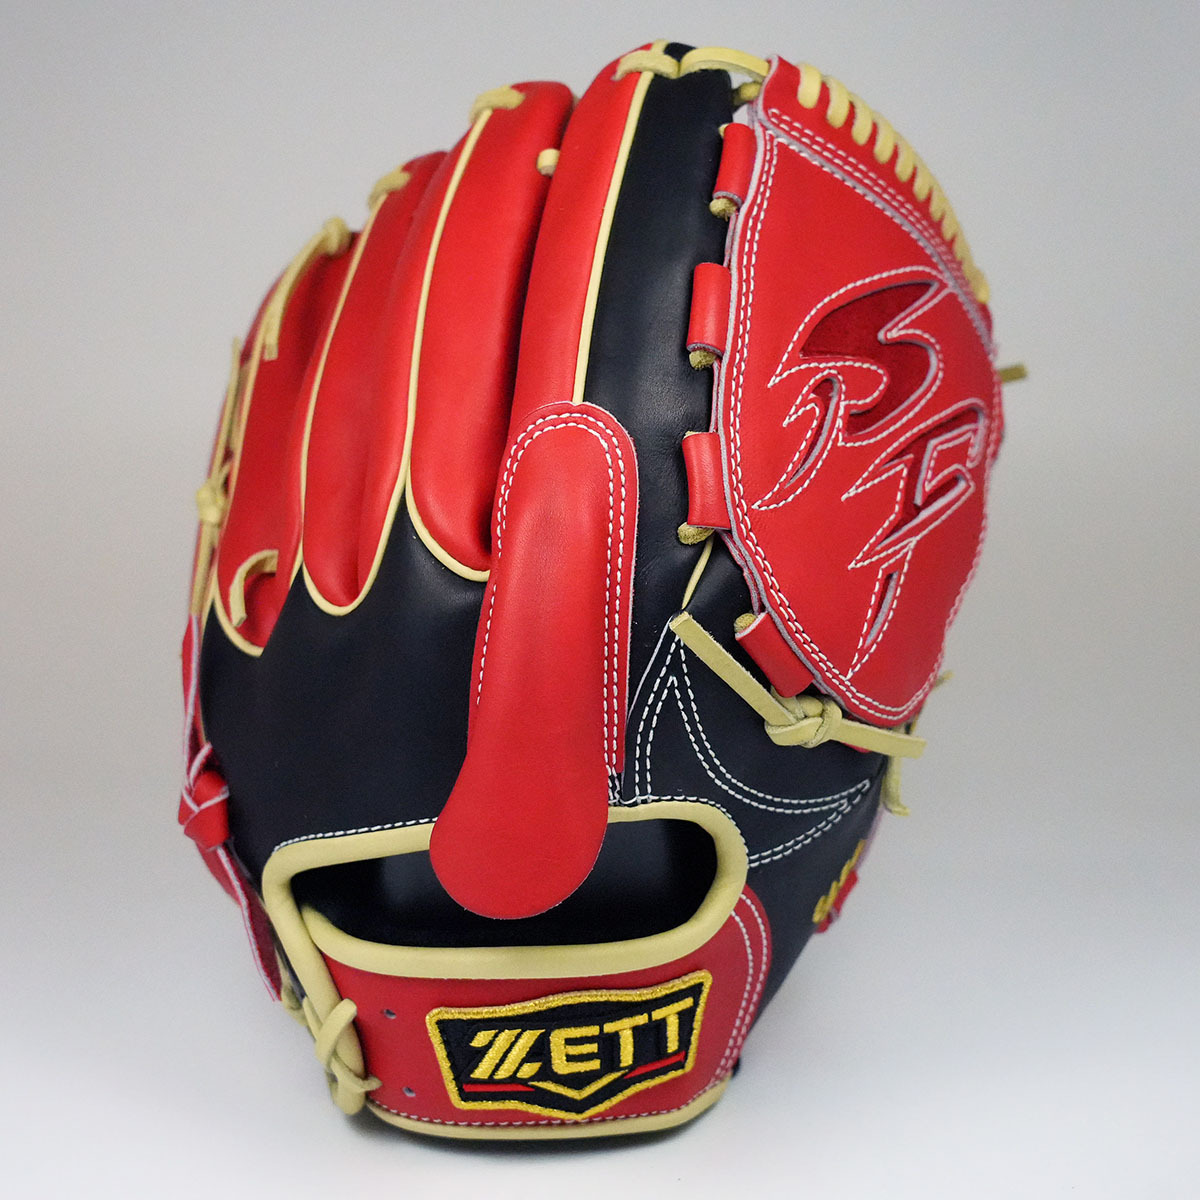 日本製ZETT PROSTATUS ORDER 611型岩崎優金標硬式最高階投手手套